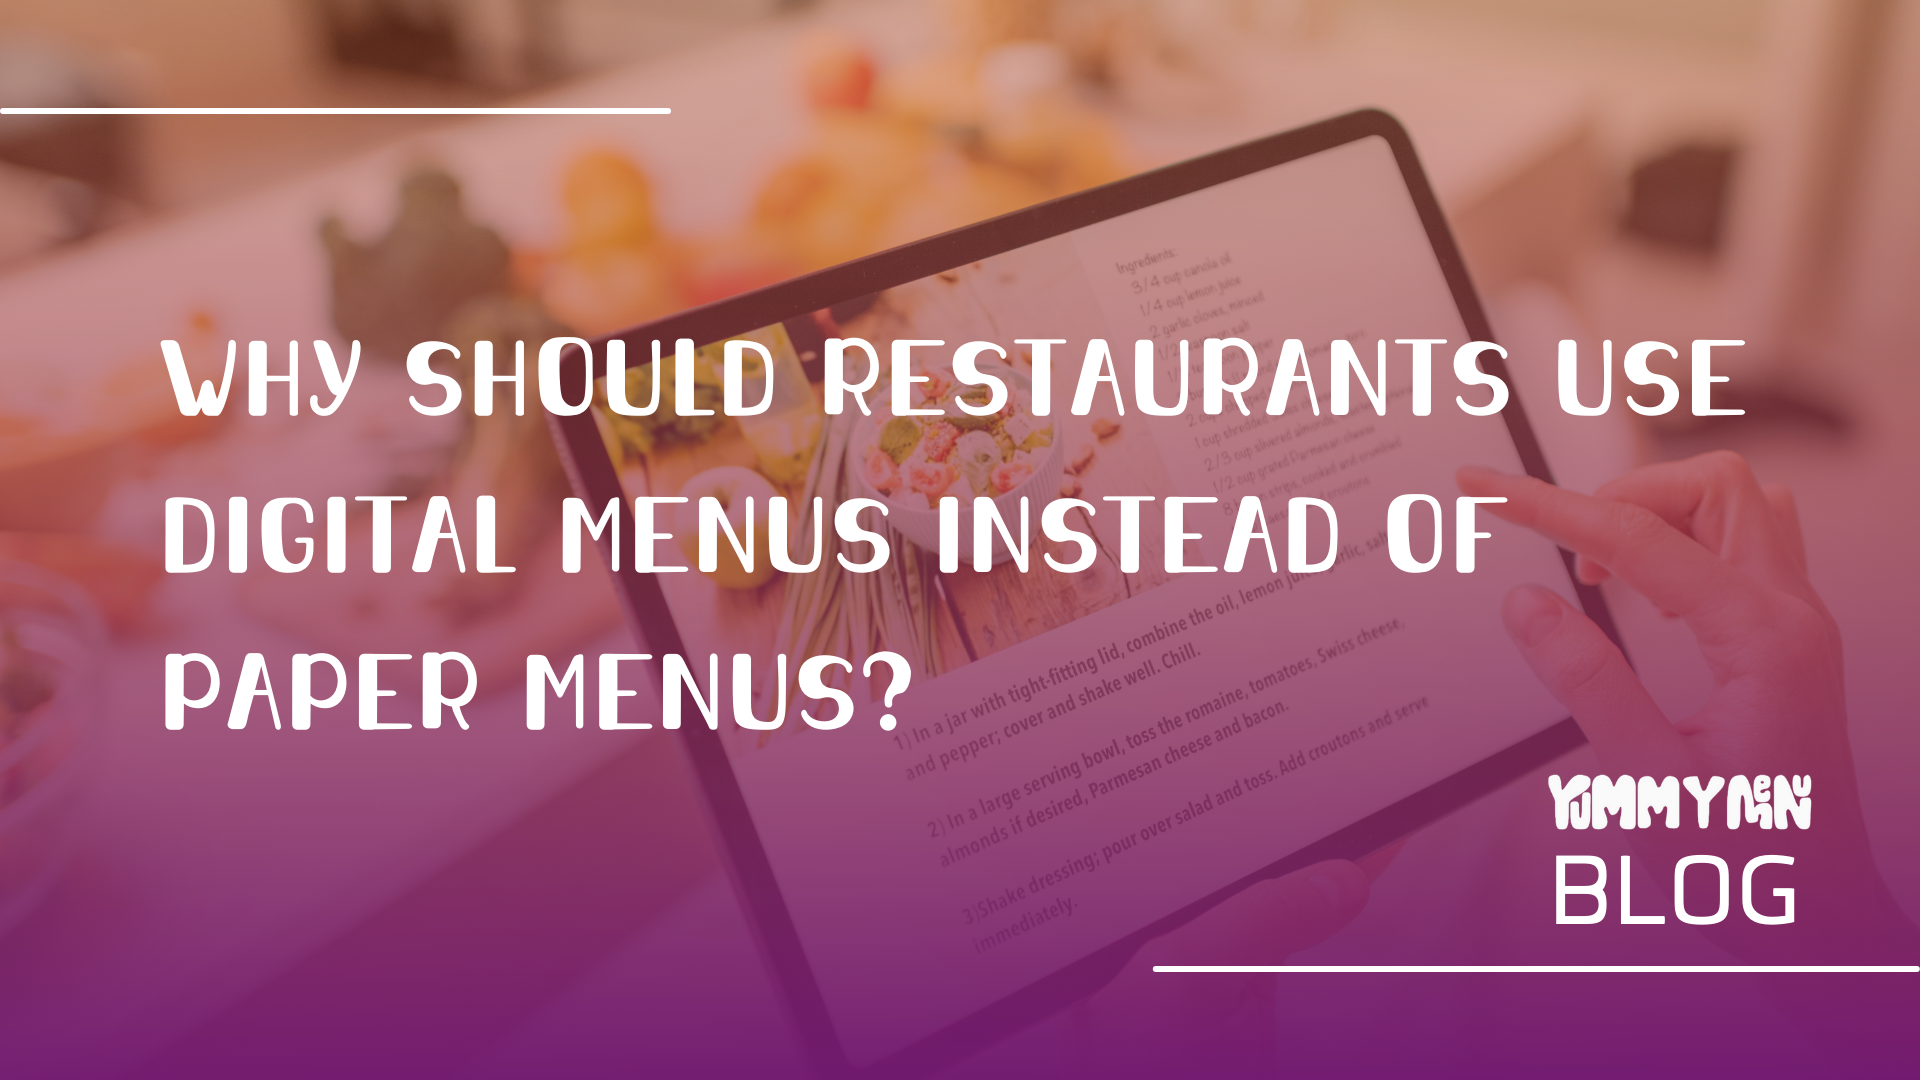 Warum sollten Restaurants digitale Speisekarten anstelle von Papierkarten verwenden?